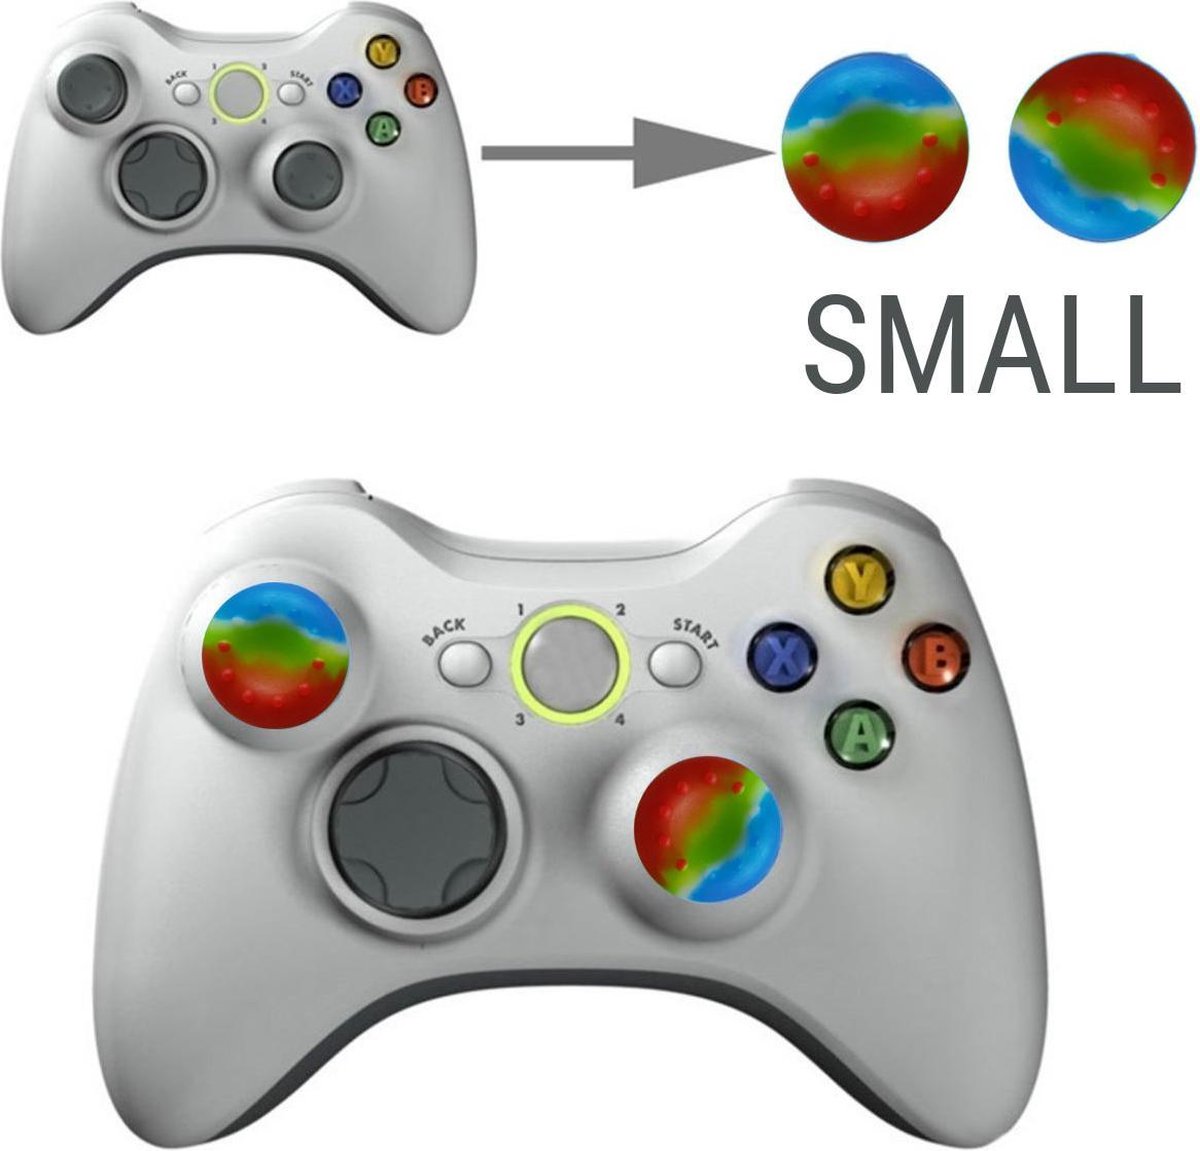 Thumb grips - Controller Thumbgrips - Joystick Cap - Thumbsticks - Thumb Grip Cap geschikt voor Switch, Switch Pro, PS4 en Xbox - 2 stuks Klein 10 dots extra grip Multicolor Regenboog